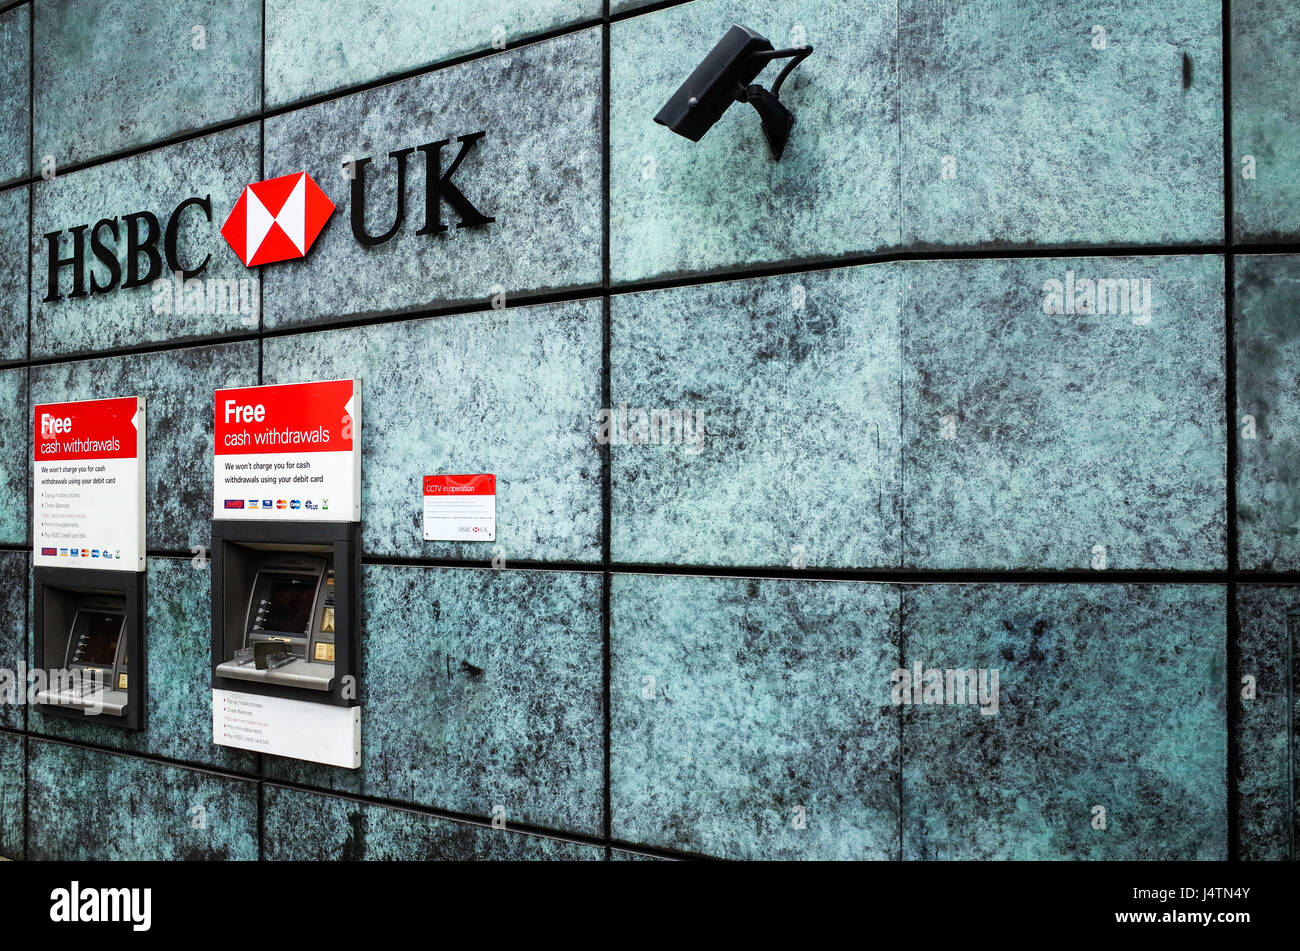 Guichets automatiques de la Banque HSBC (distributeurs ou guichets automatiques), dans la ville de London, financial district, UK. Banque D'Images